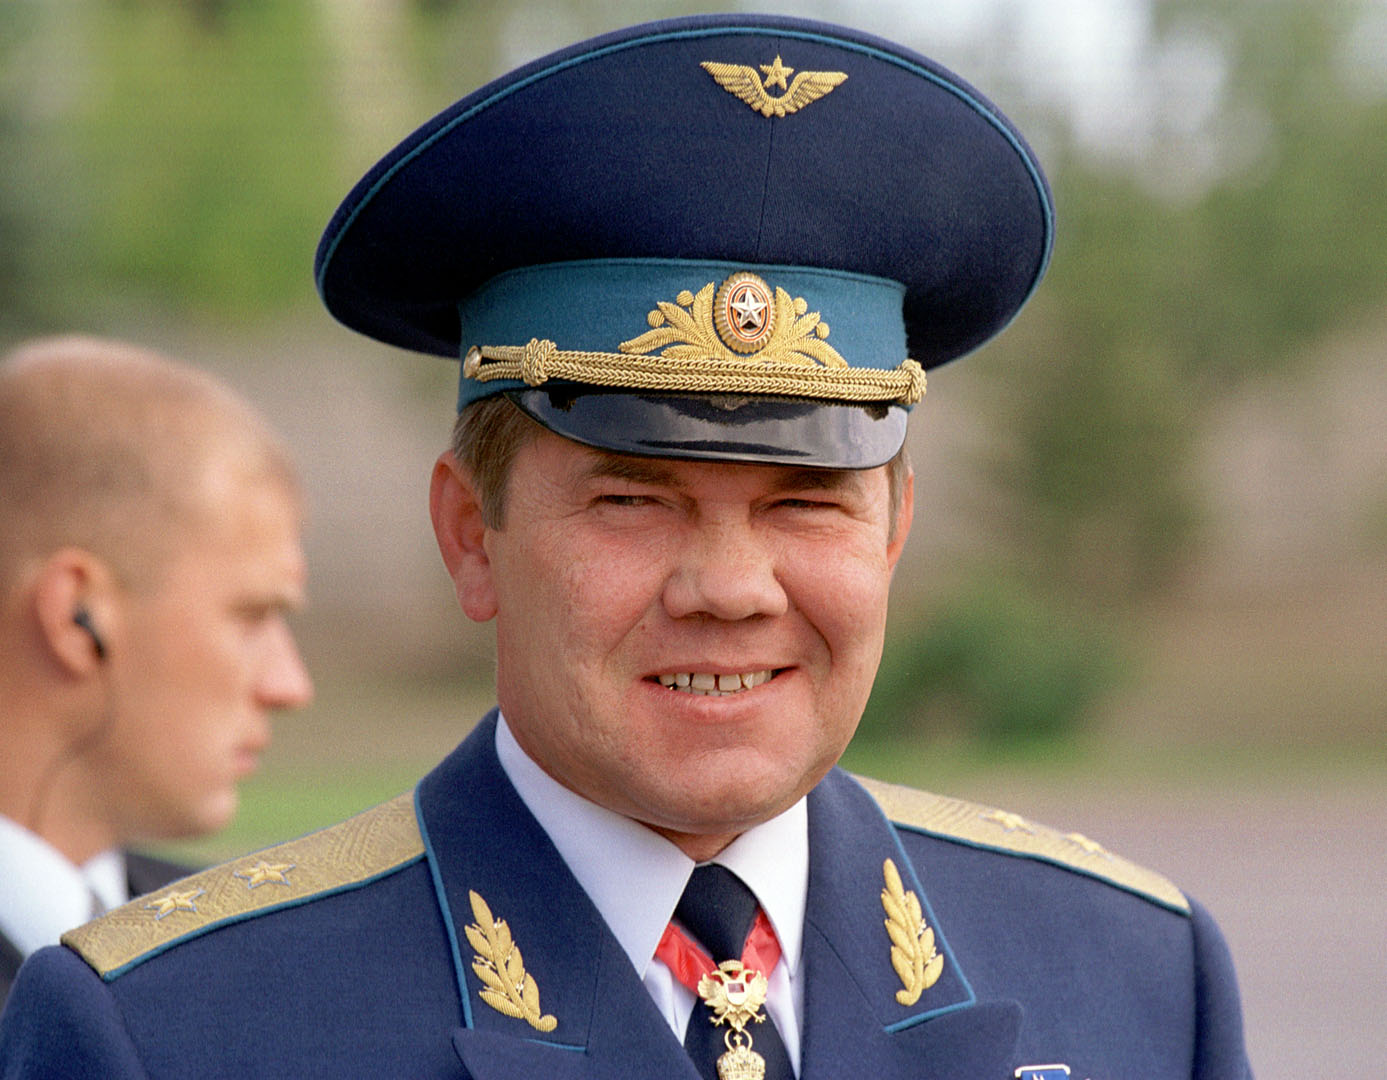 Чеботарев генерал фото